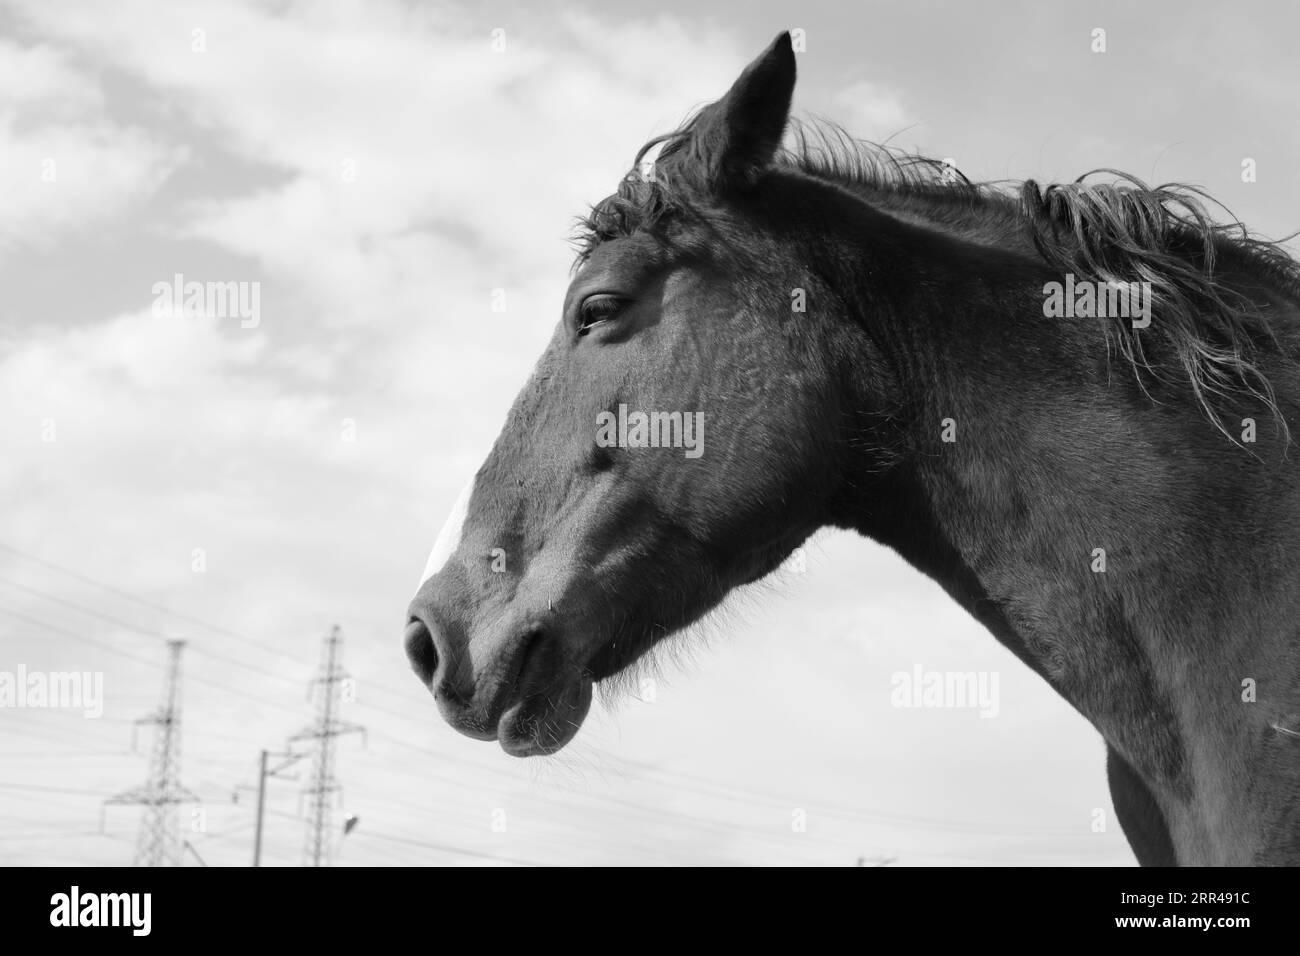 Queste foto sono state scattate in uno dei nuclei animali più belli di Erevan. C'è un cavallo più bello e carino che tu abbia mai visto. Foto Stock